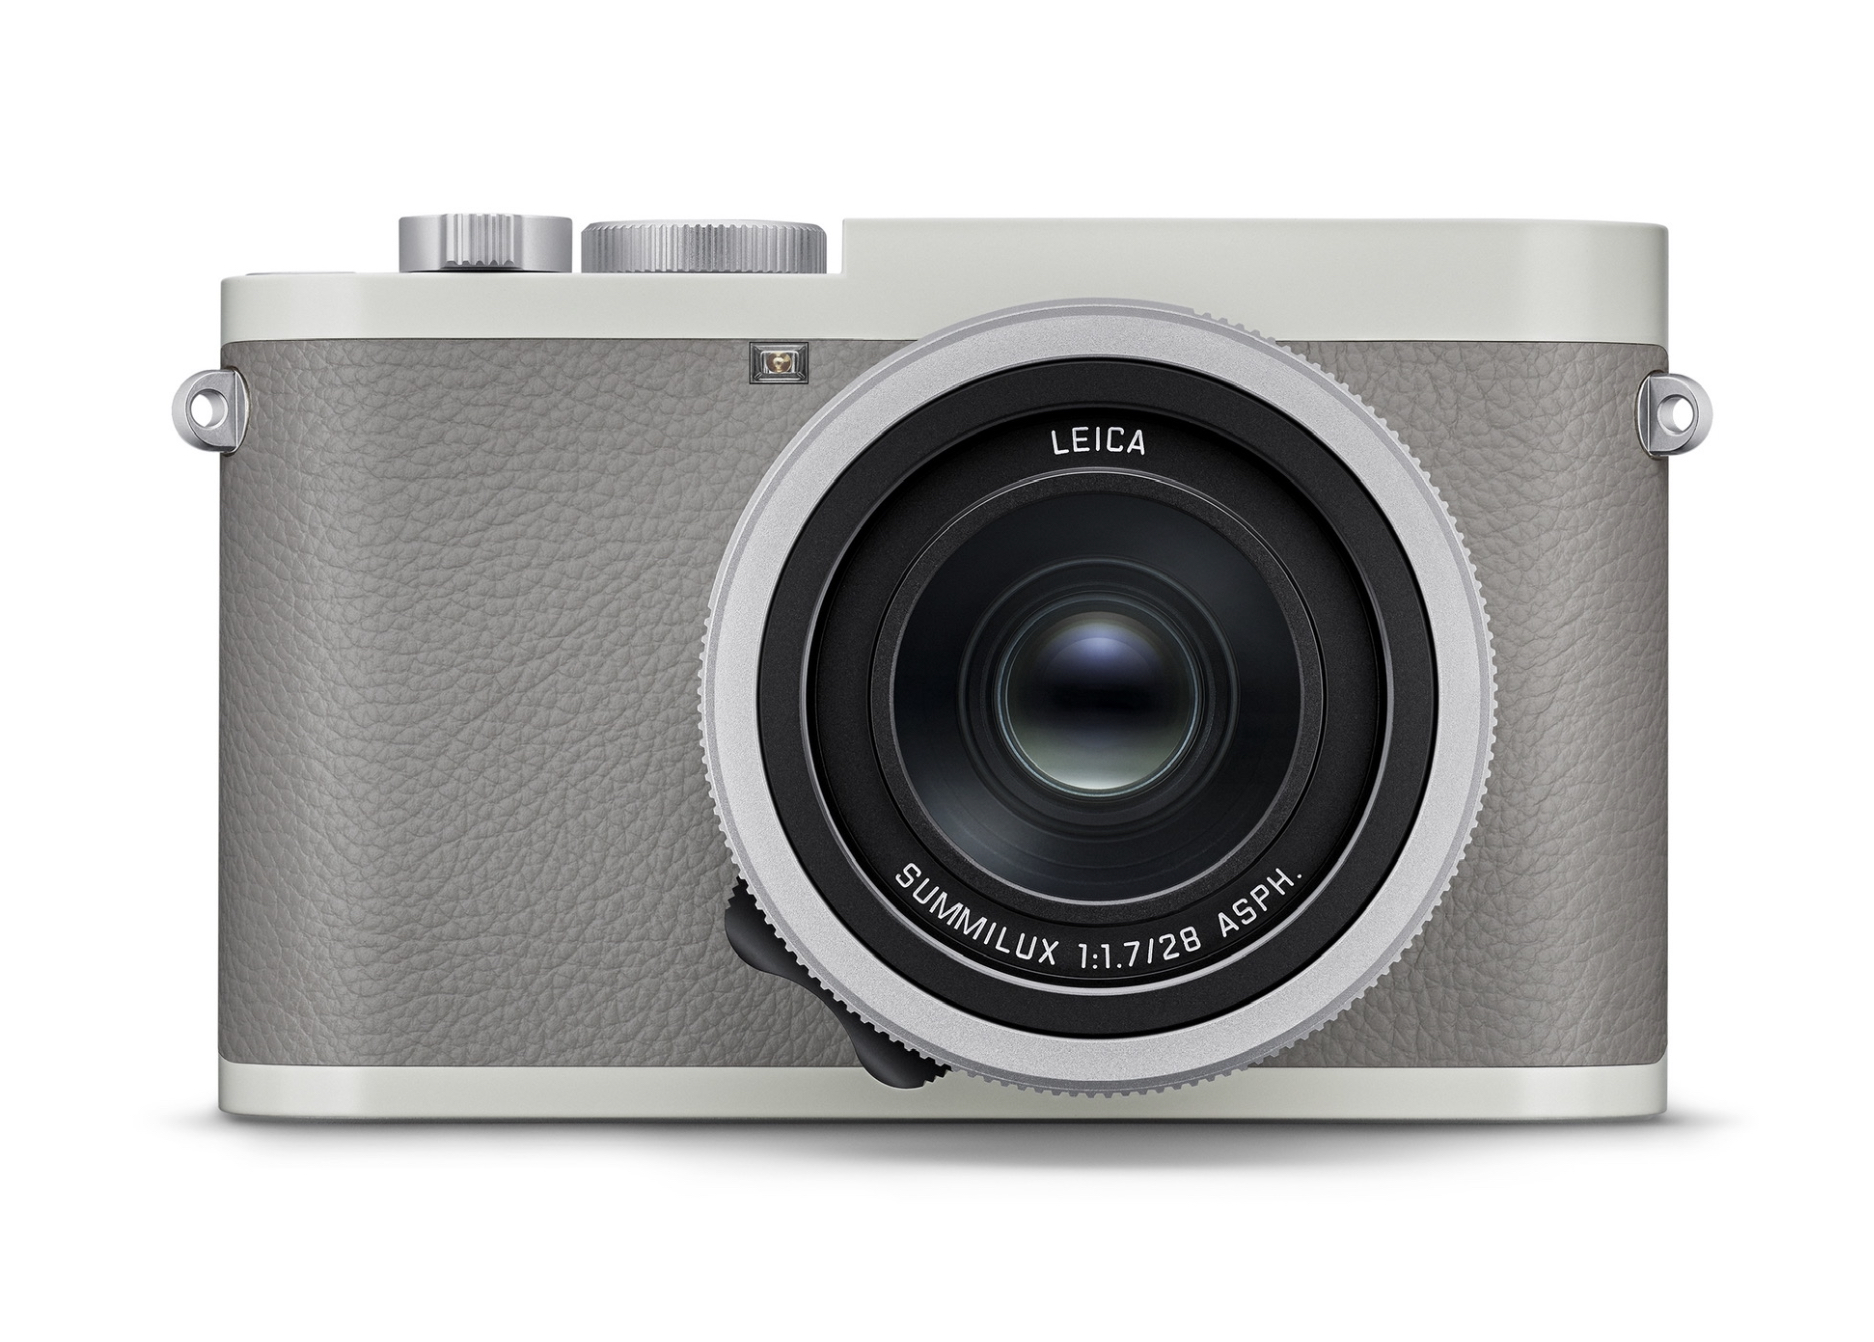 Leica ra mắt máy ảnh Q2 "Ghost", phiên bản đặc biệt hợp tác với Hodinkee